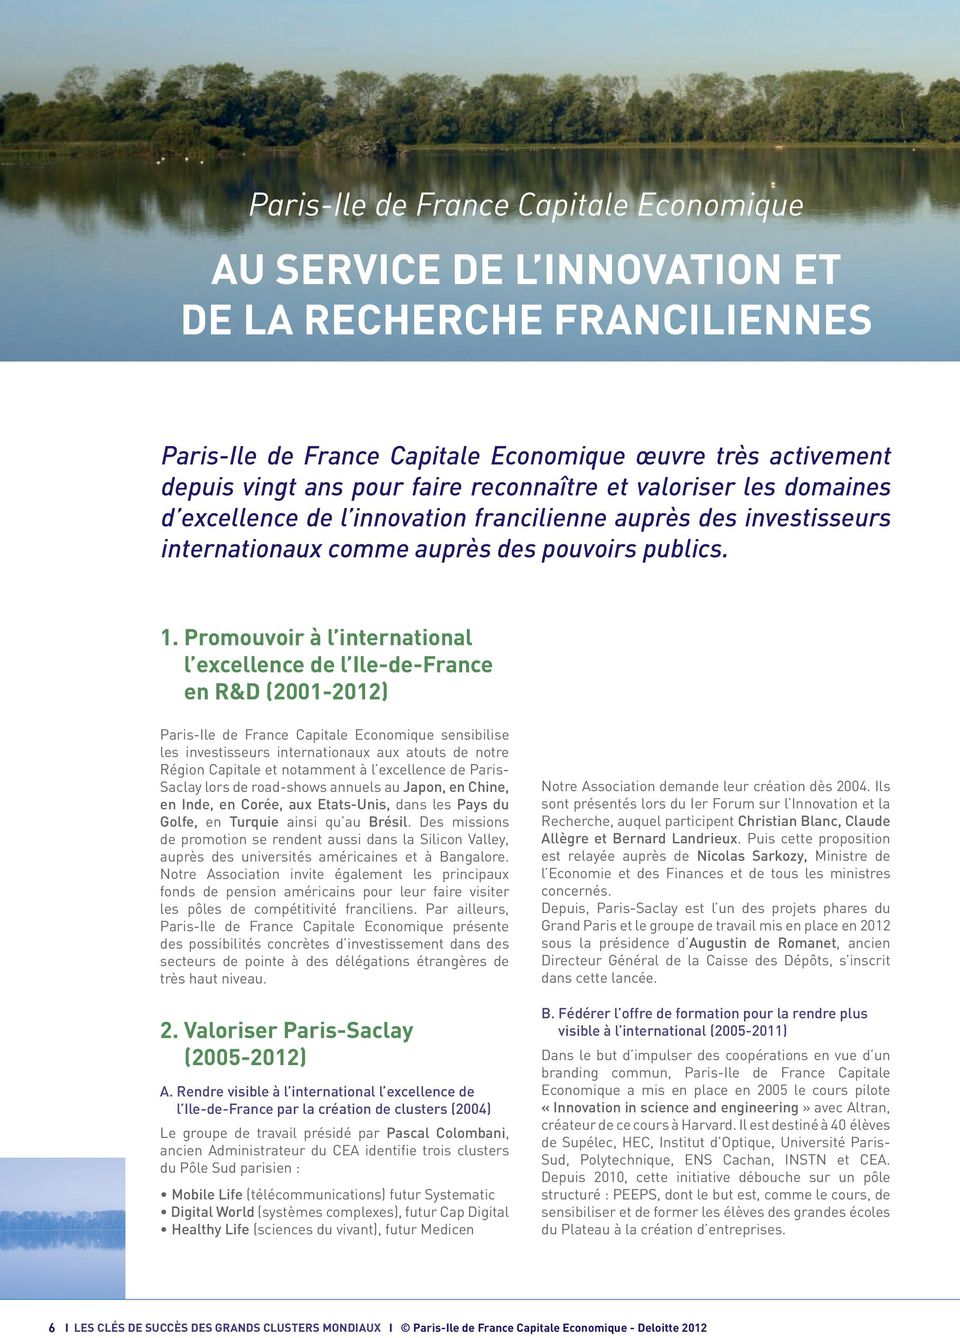 promouvoir à l international l excellence de l Ile-de-France en R&D (2001-2012) Paris-Ile de France Capitale Economique sensibilise les investisseurs internationaux aux atouts de notre Région